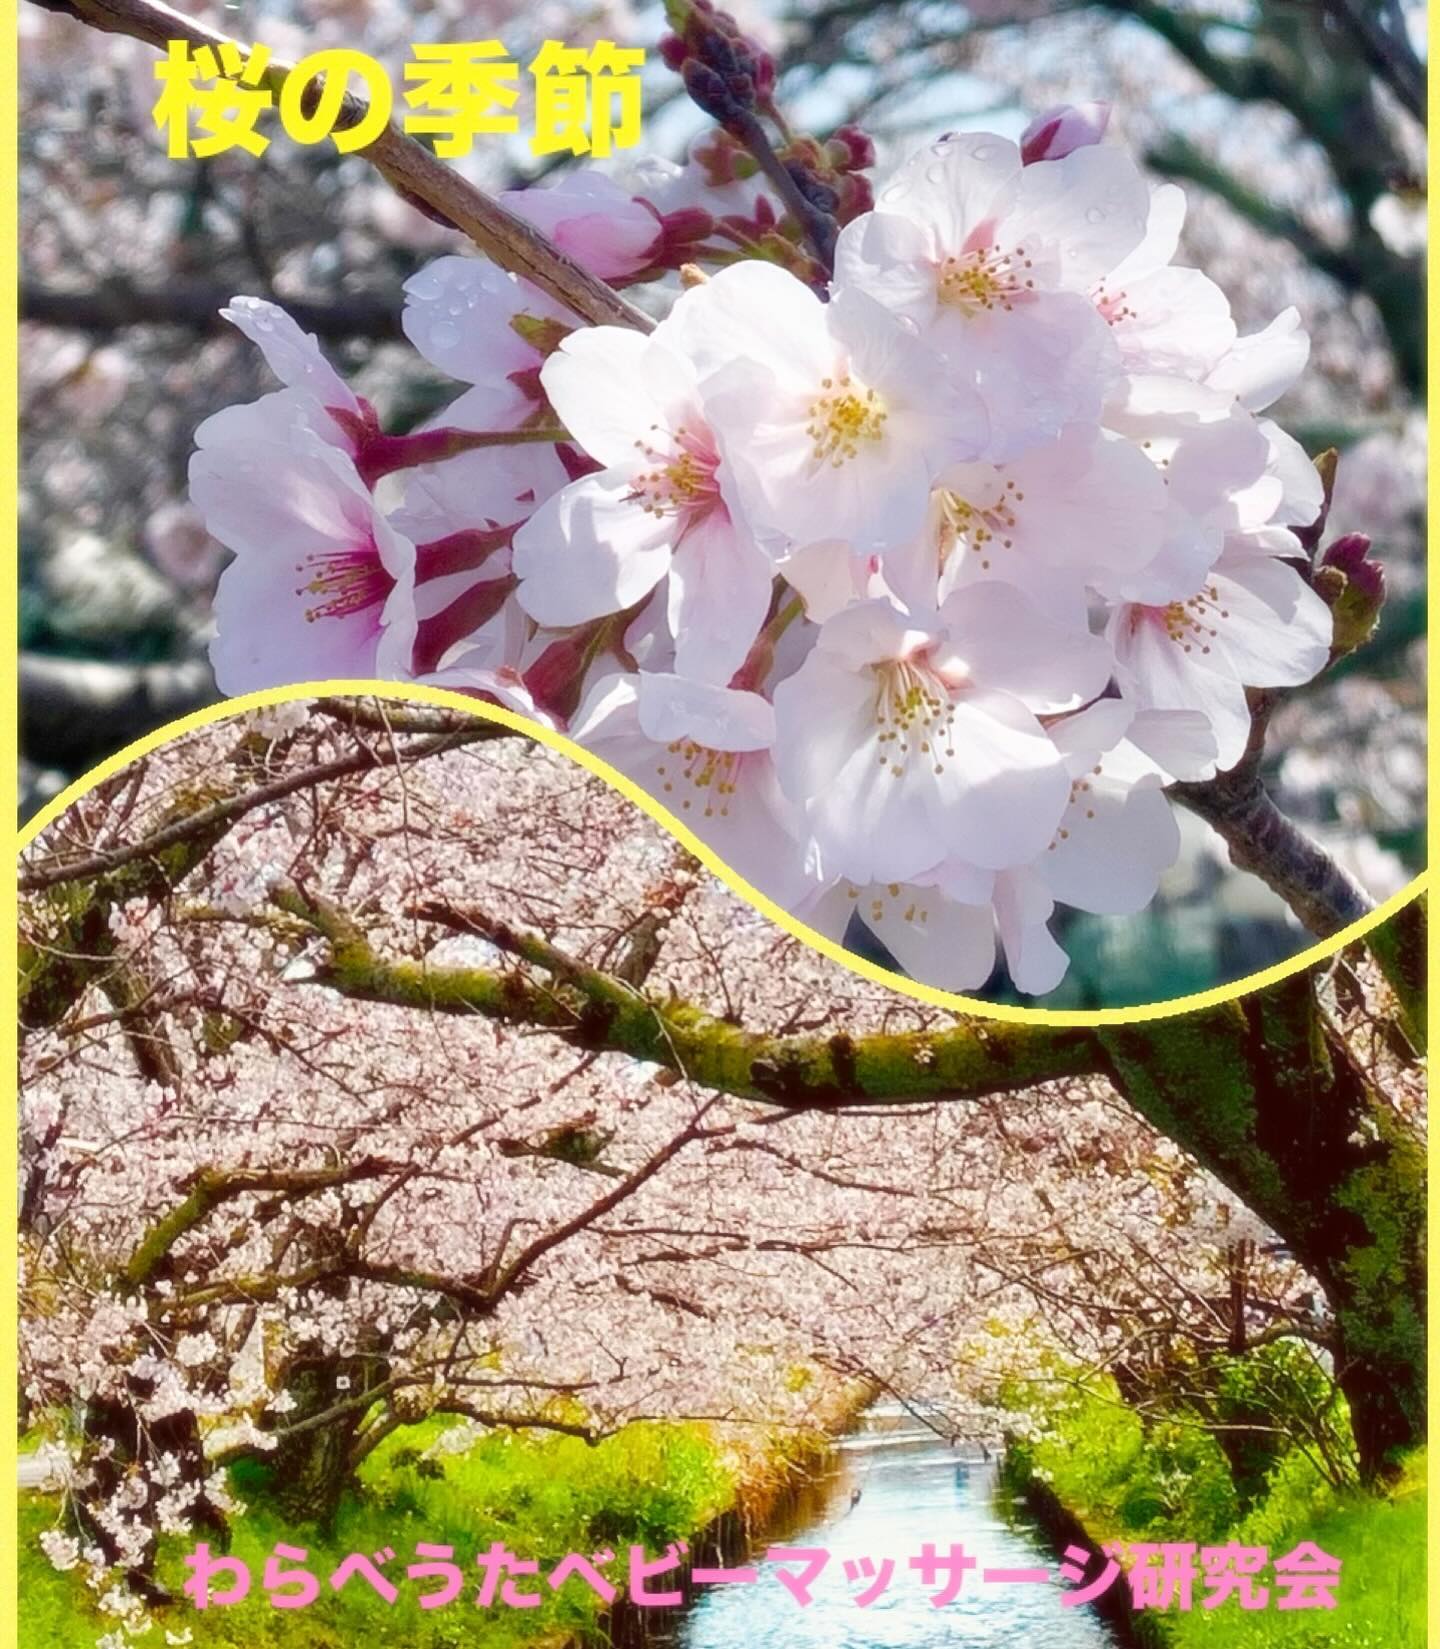  【お散歩やウォーキングで脳活性】今週末は、桜が見頃…というところが多そうですね年度始めの忙しさに追われ、ゆっくりお花見ができない私は、自宅から徒歩15秒のこじんまりとした桜並木の景色を毎日楽しんでいますこの時期のお散歩やウォーキングはオススメです。歩く時には歩幅を広めに！花や風の香りを意識して嗅覚を刺激。鳥のさえずりやこども達の元気な声など聴力を刺激。いつも歩きなれた道ならば、風景や景色の変化を意識してみましょうお散歩やウォーキングは、運動による血流アップ以外にも、感覚を刺激し脳活性に繋がります。🤗脳活わらべうた資格取得講習会では日常生活に役立つ話の時間も作っております。気になる方はhttps://www.jyosansi.com/nokatu/をチェック！＠warabebima記:村松晶子（脳活わらべうたティーチャー・静岡）#脳活わらべうた #シニアと子ども #レクリエーション #体操 #シニアと子どもの架け橋 #世代間交流 #福祉 #認知症予防 #脳活性　#育脳#資格取得　#ベビーマッサージ資格#脳活資格 